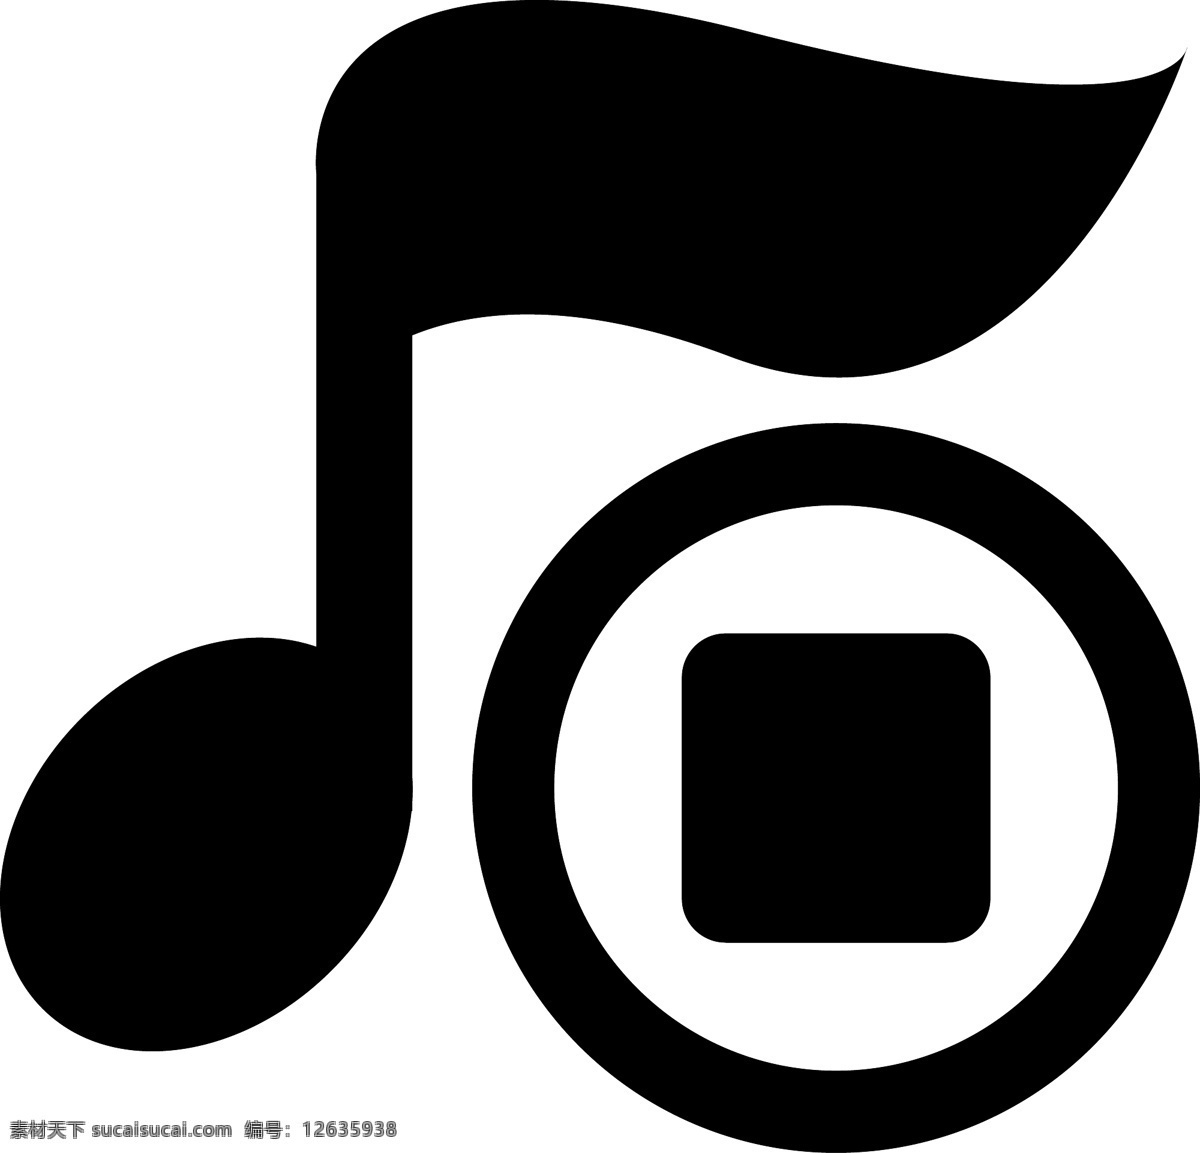 音响 dj 图标 麦克风 迪斯科 收音机 耳机 cd 音箱 音频包 ipod 图标包 垂直的轨道 mp3 黑色